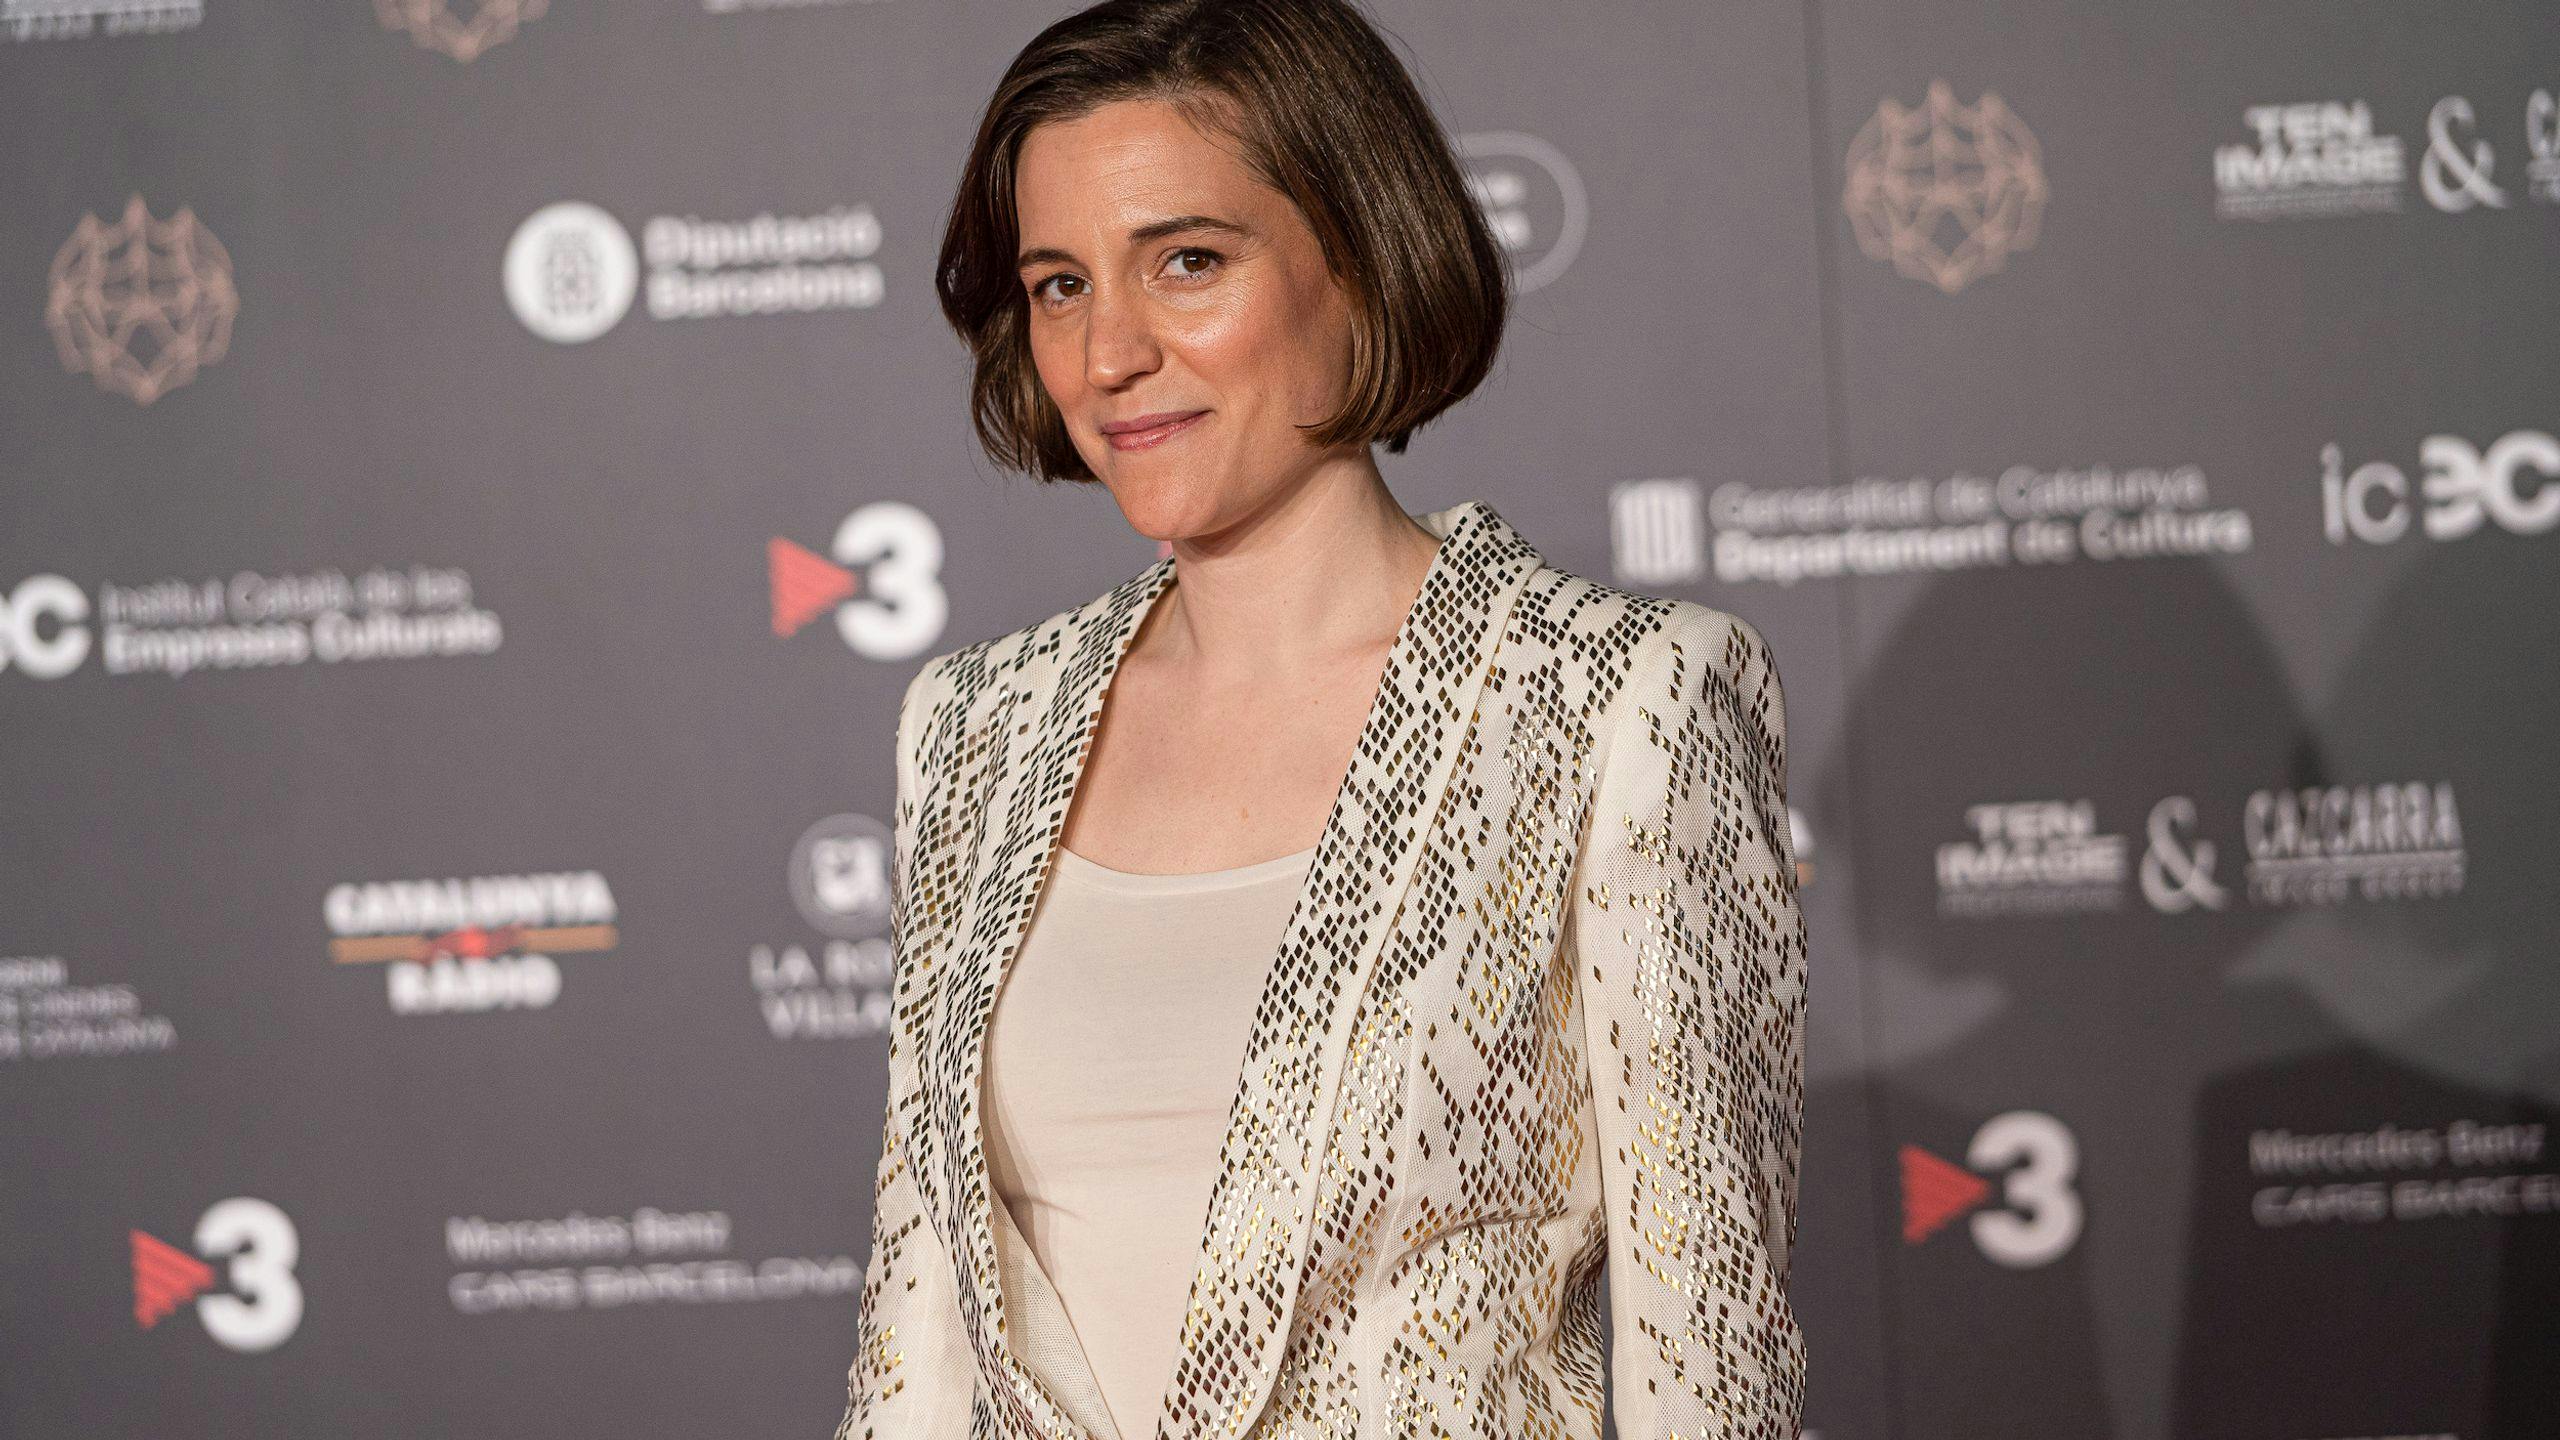 La directora Carla Simón posa en la alfombra roja de los Premios Gaudí 2023